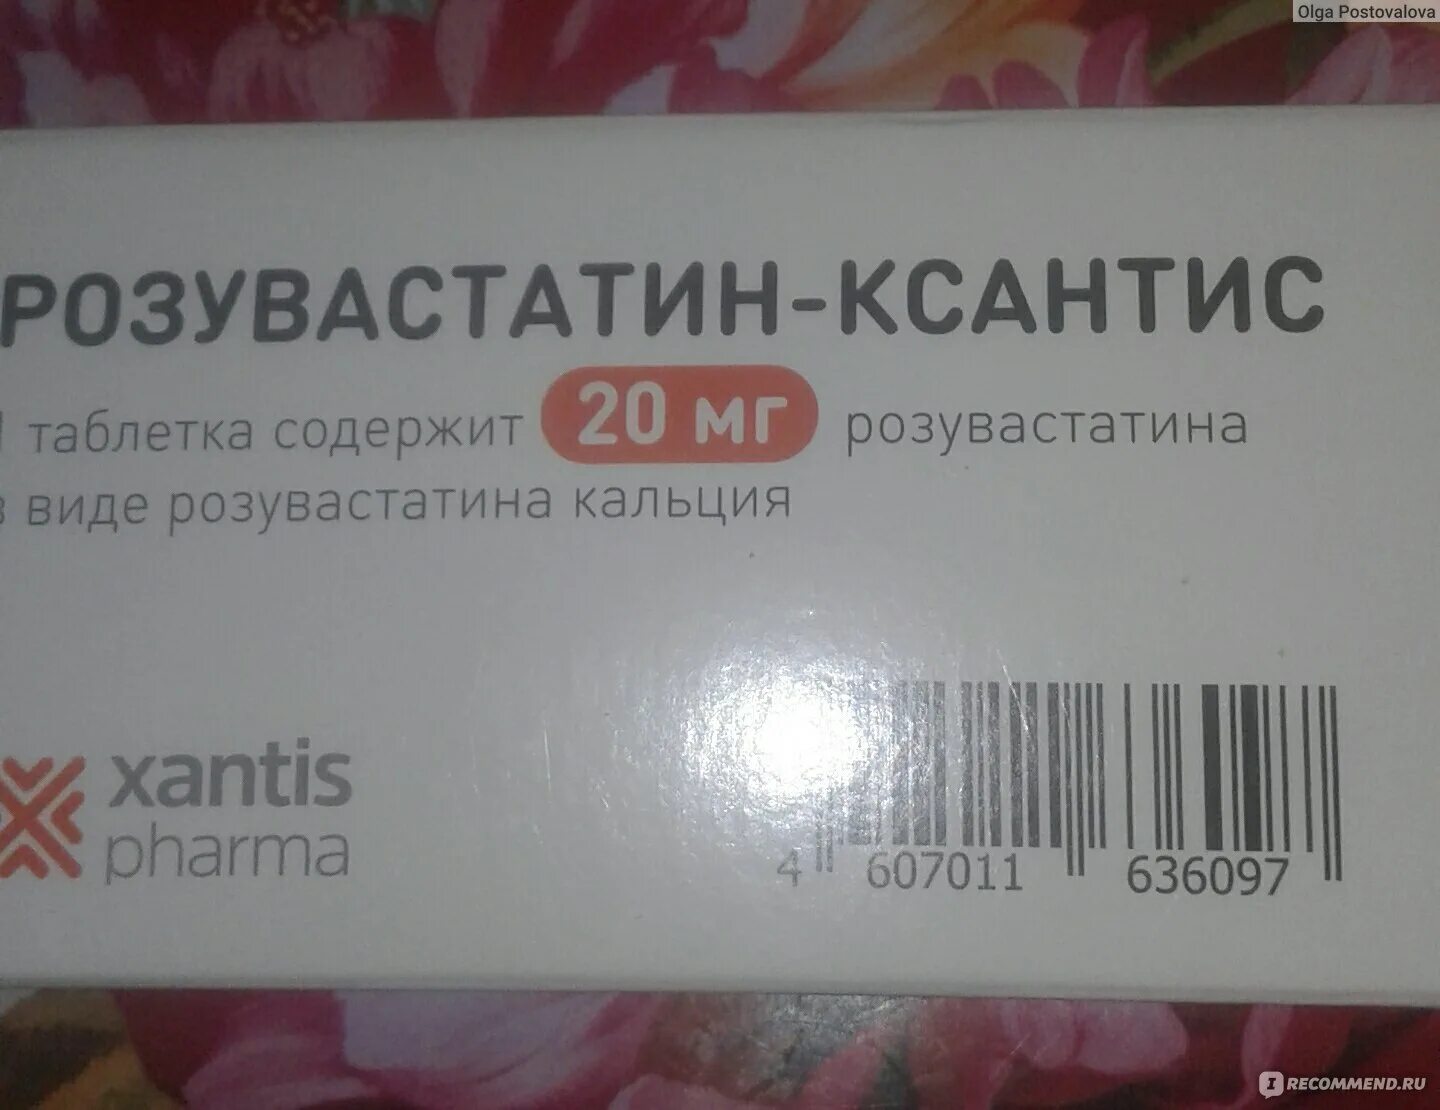 Розувастатин КСАНТИС 10 мг. Розувастатин 20 мг АЛСИ. КСАНТИС Фарма препараты. Розувастатин КСАНТИС 20. Для чего назначают таблетки розувастатин